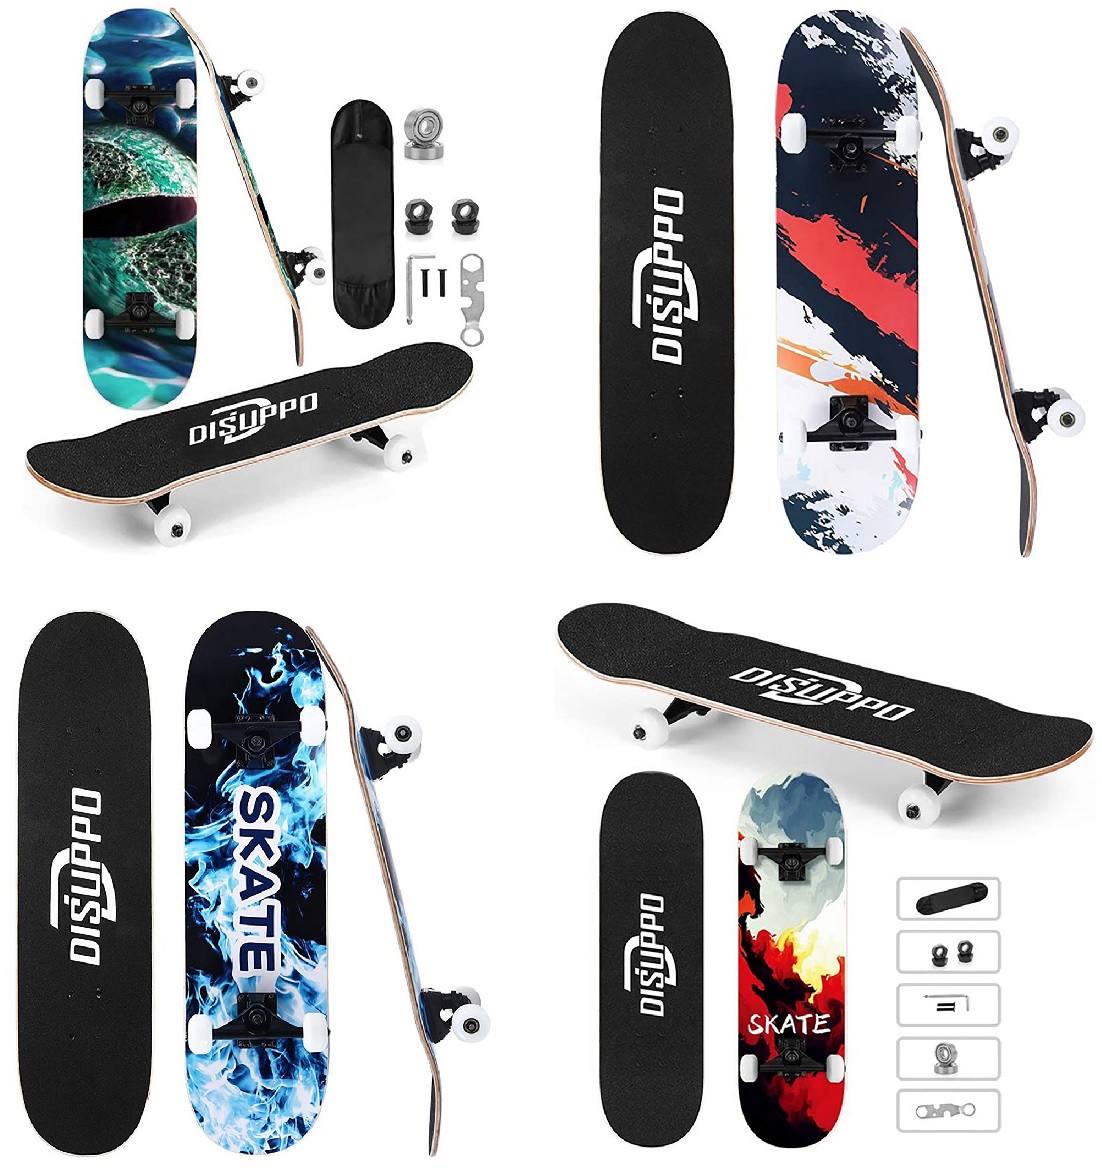 Disuppo Skateboard mit farbigen Motiven und rutschfester Oberfläche + Skatetasche + Werkezeug für Räder und Lager, Kinder, Anfänger (Auswahl)